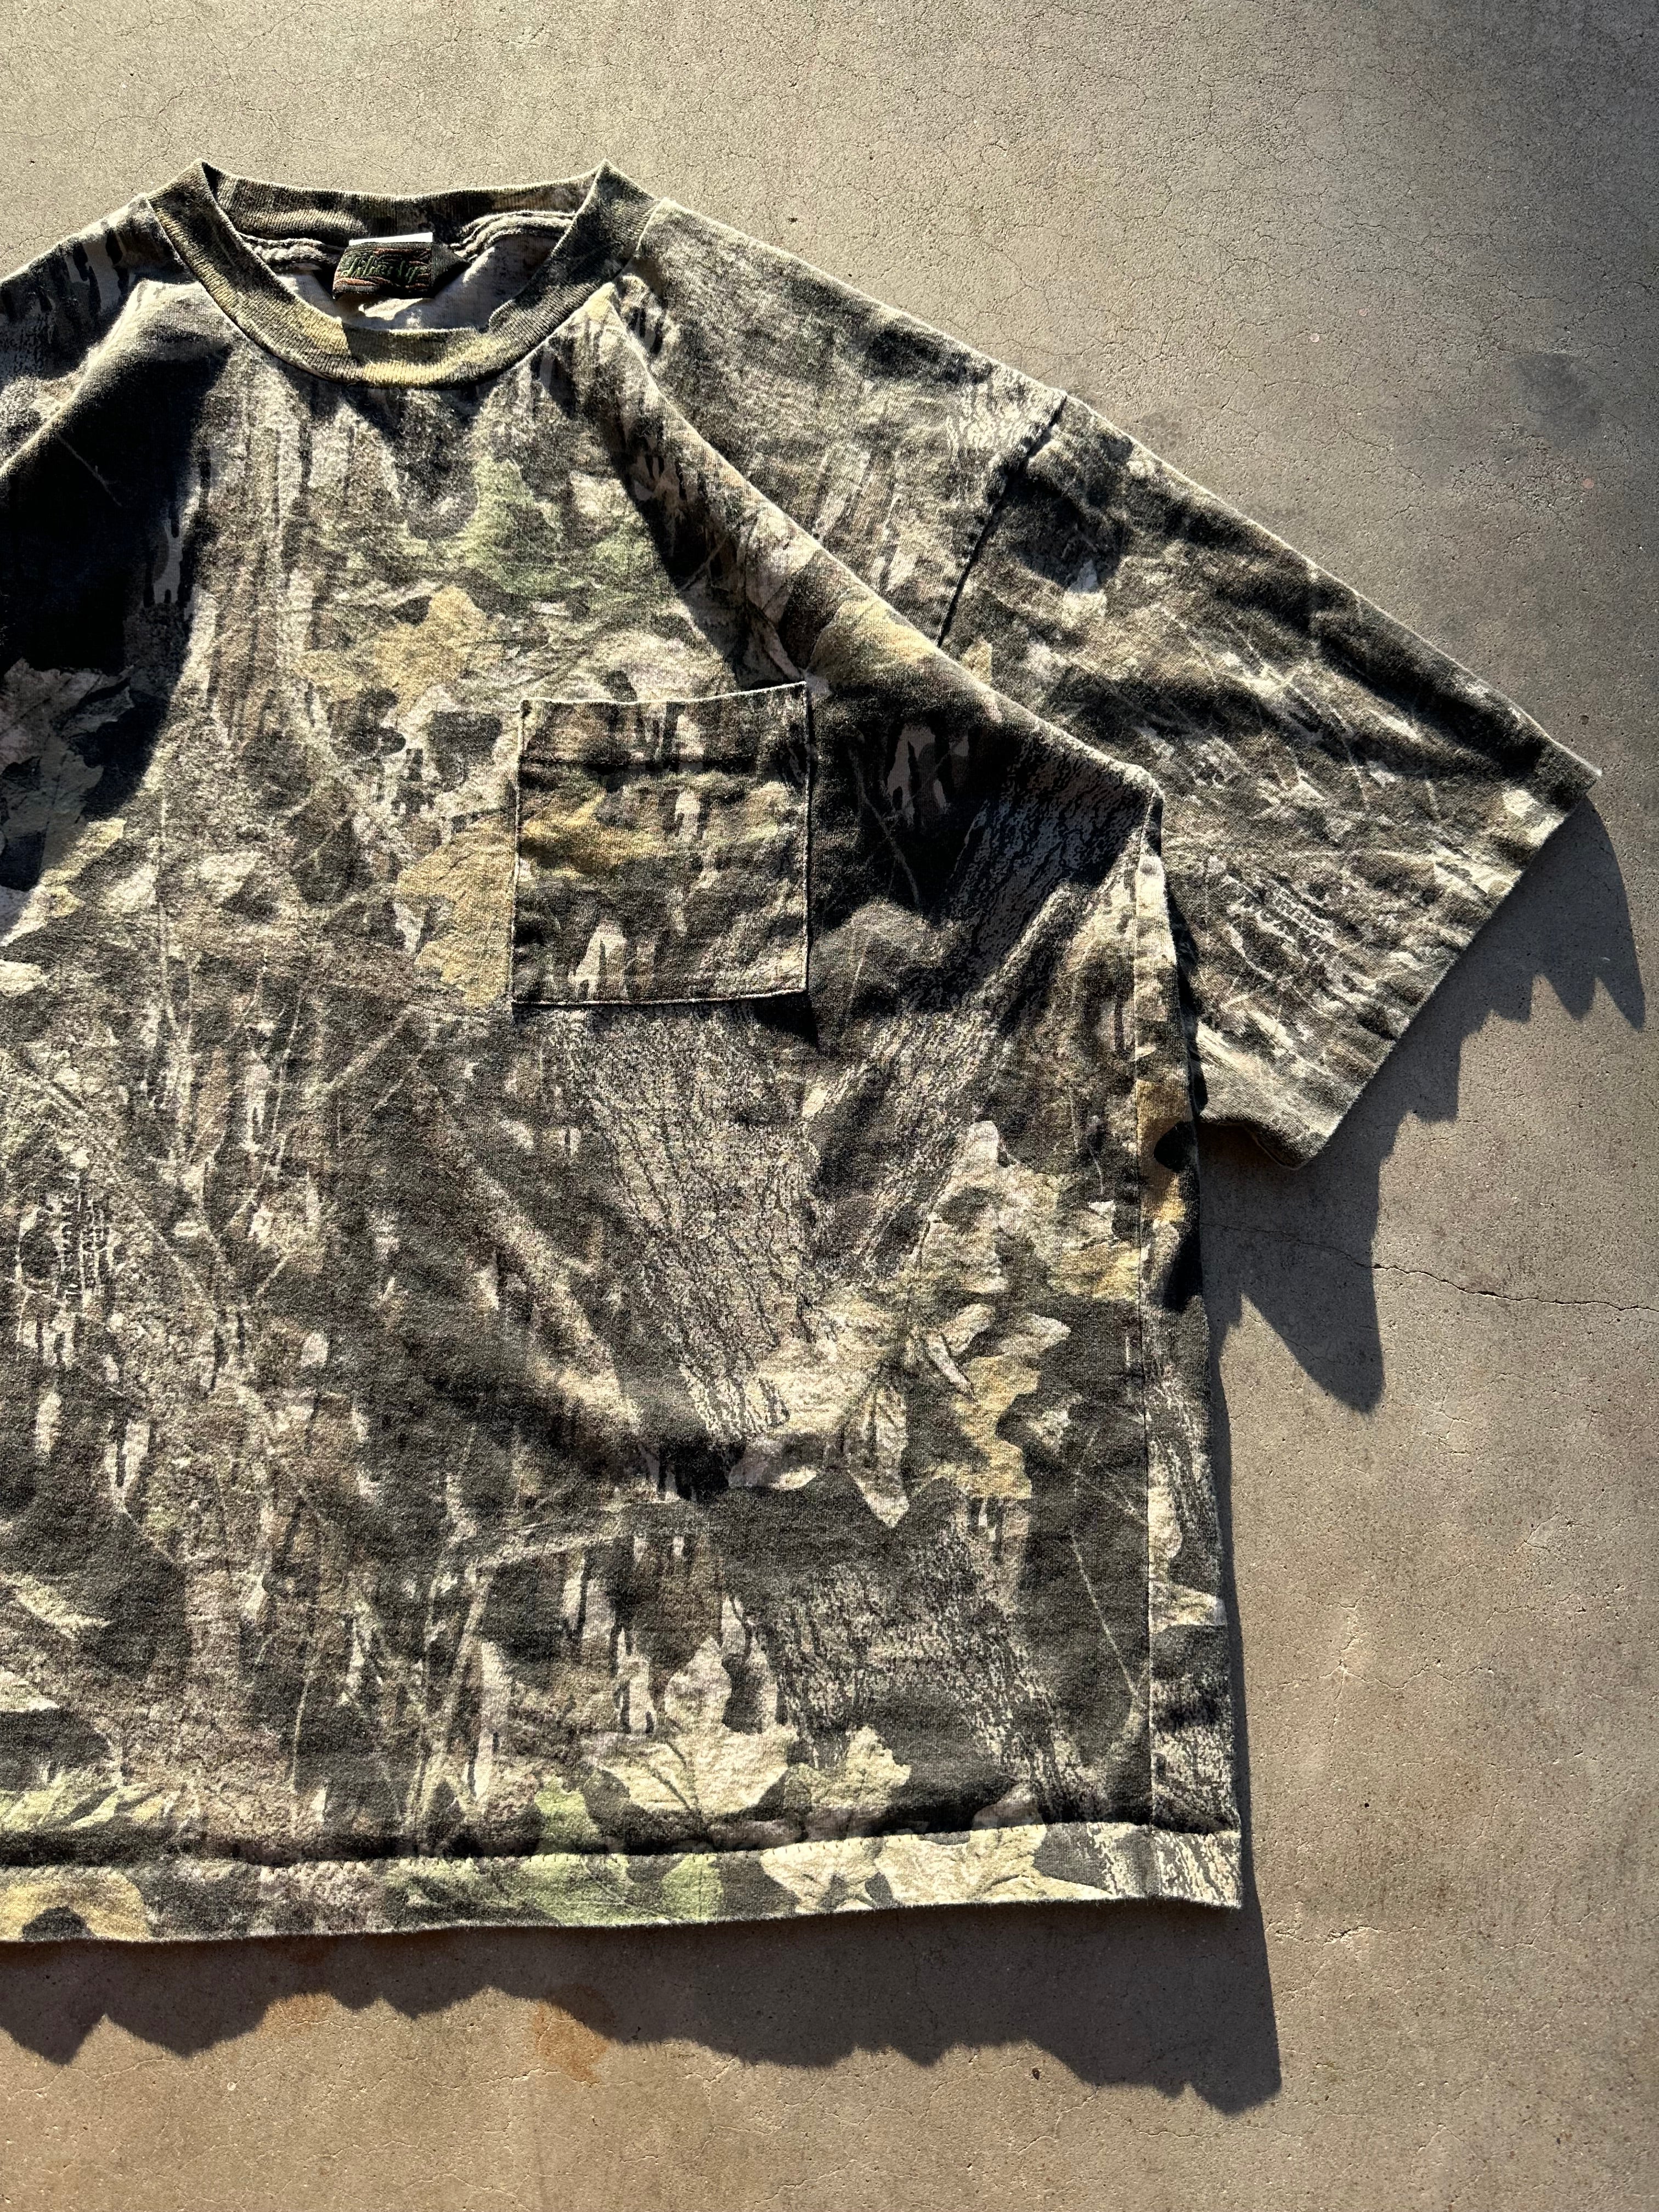 1990s Mossy Oak Break Up Camo T-Shirt (XL)